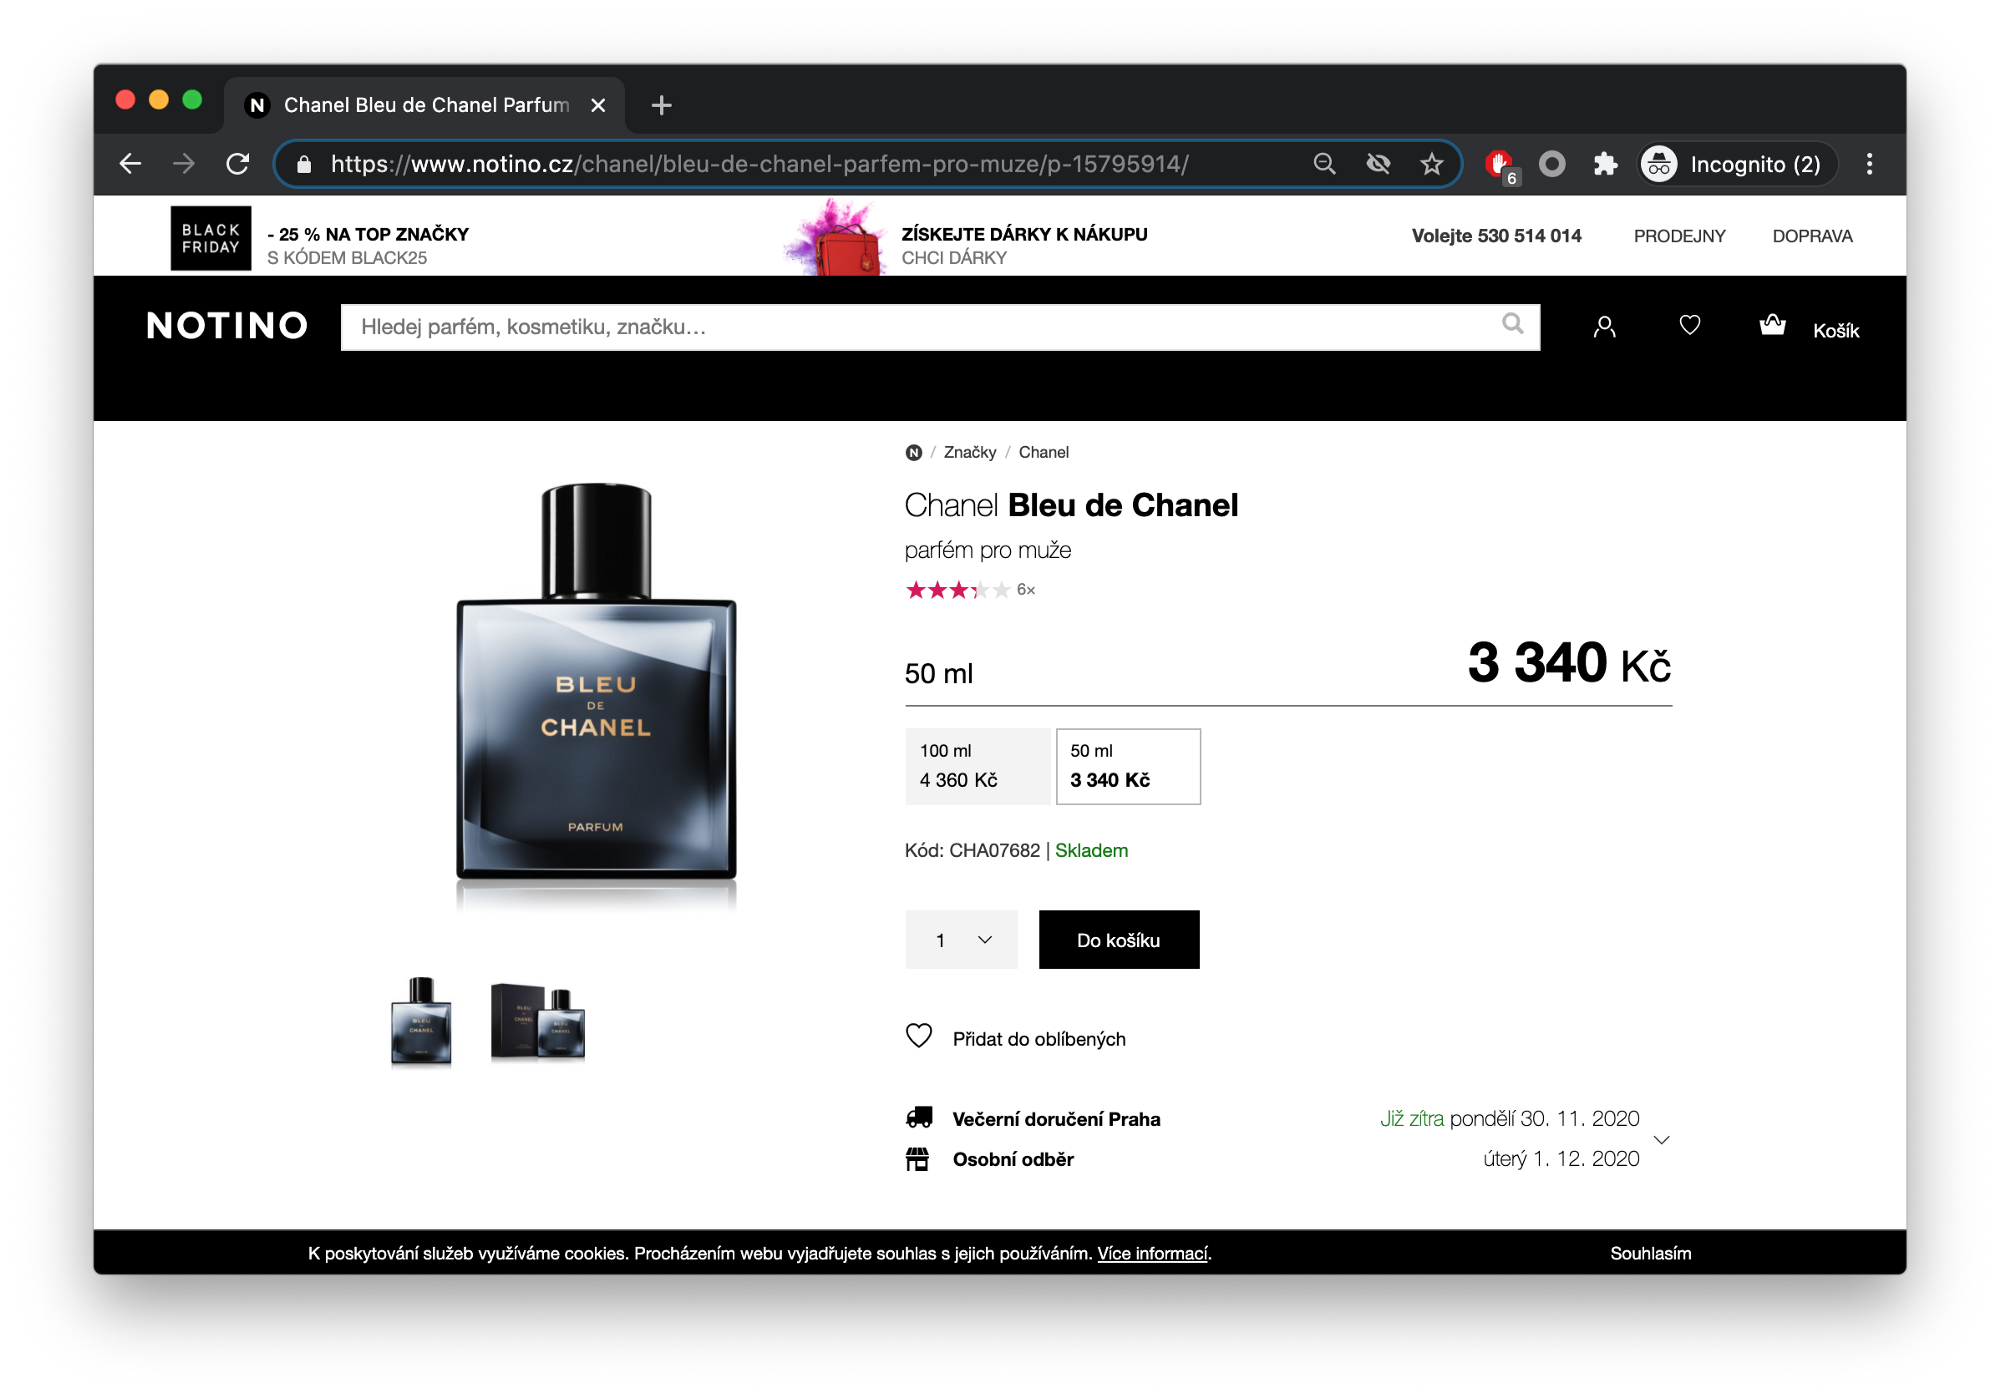 snímek obrazovky parfému na webu notino.cz za cenu 3340 Kč